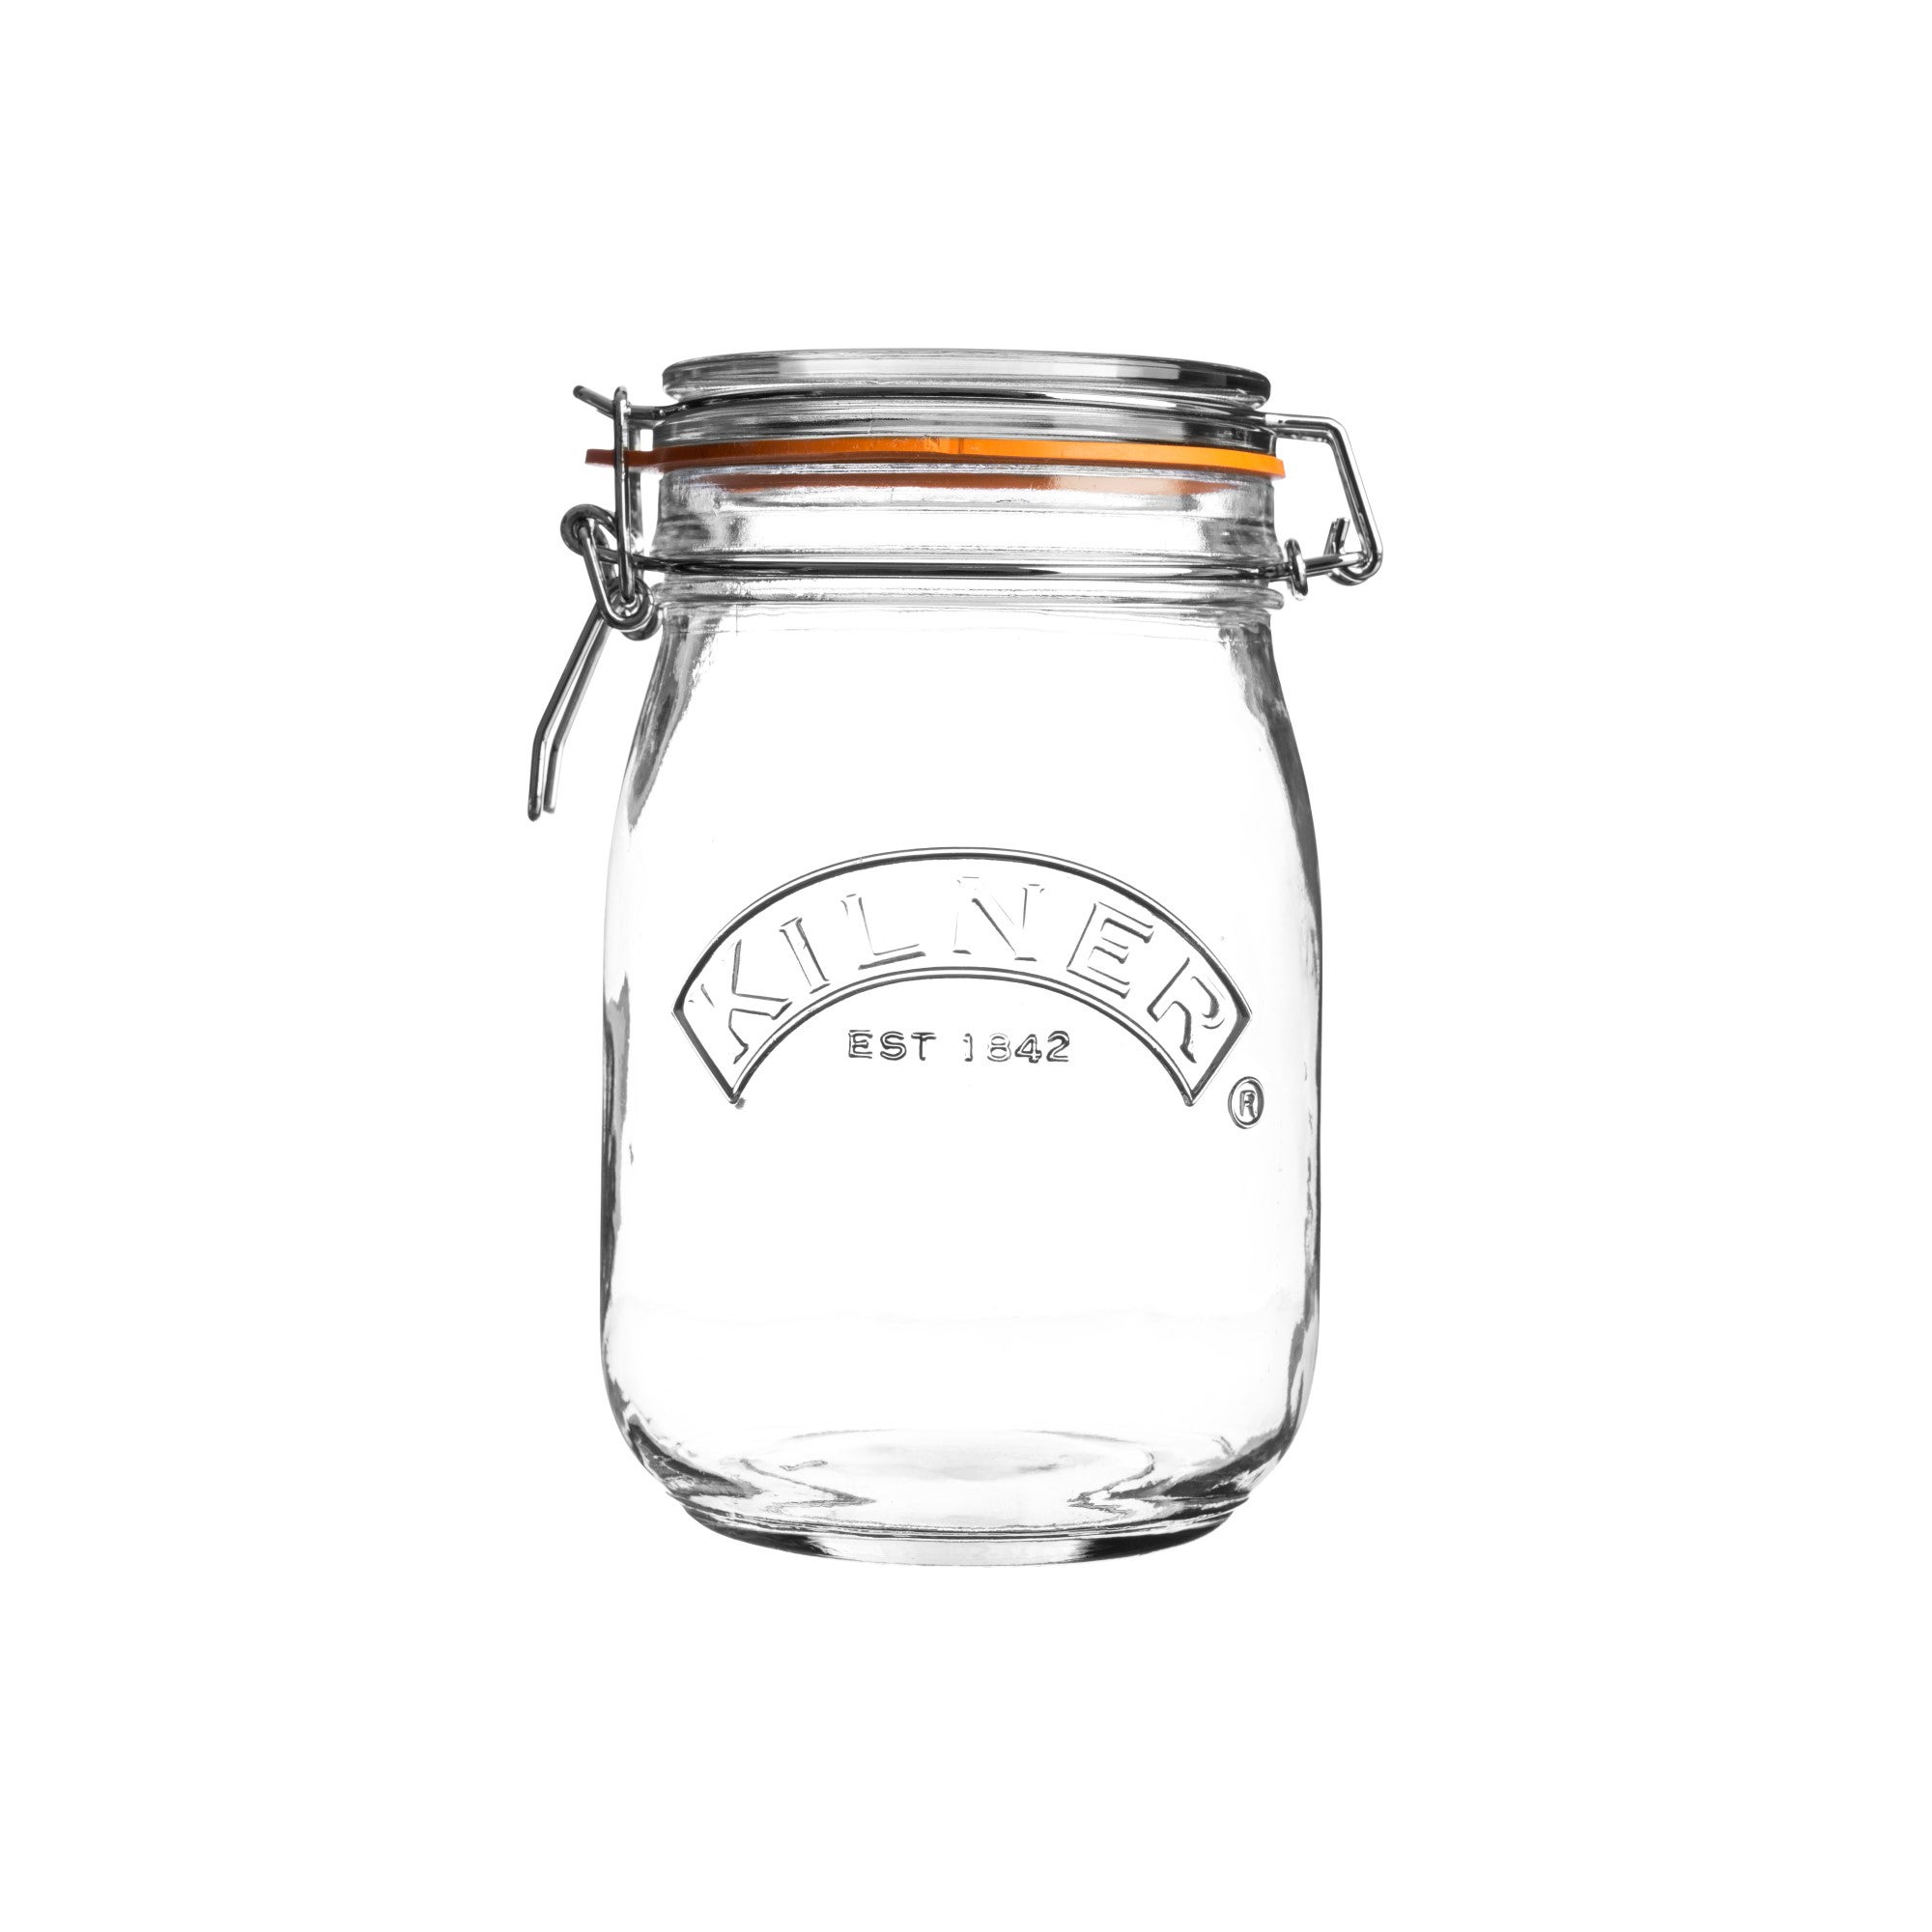 Kilner 1 Litre Round Clip Top Preserve Jar